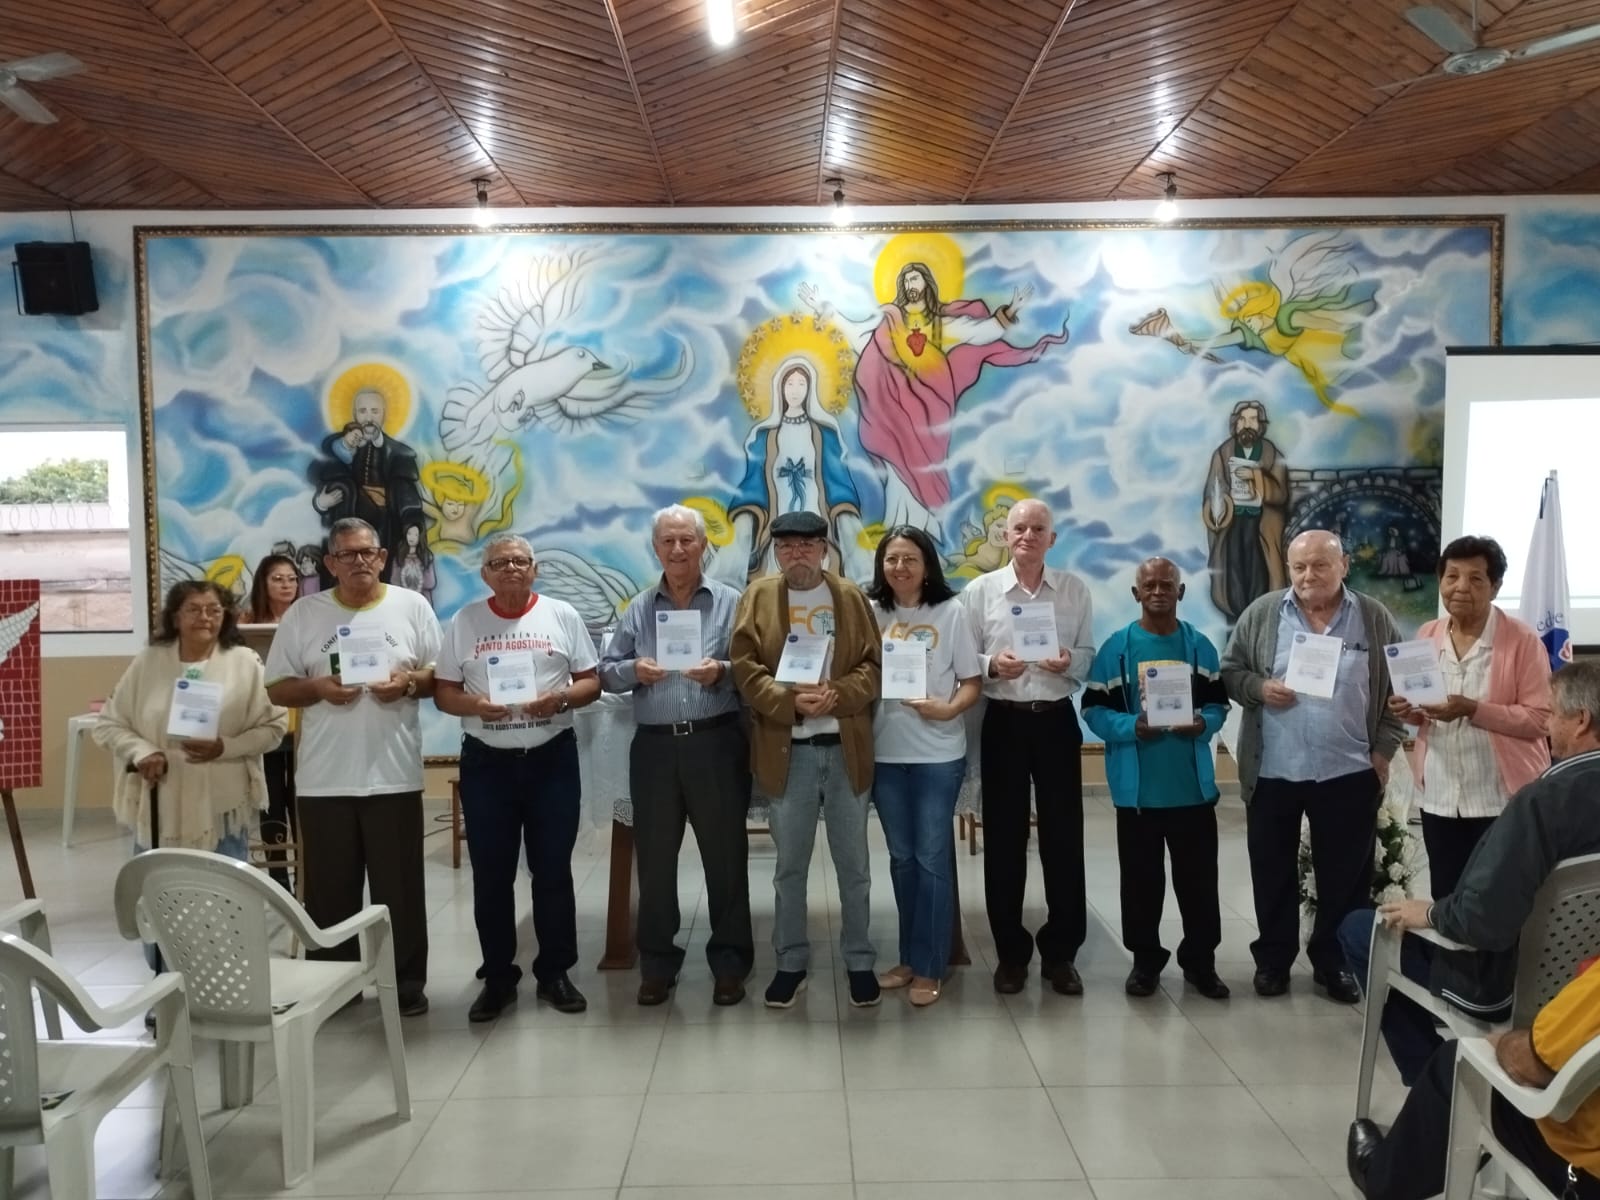 Conferência de São Vicente de Paulo da Paróquia de Nossa Sra. do